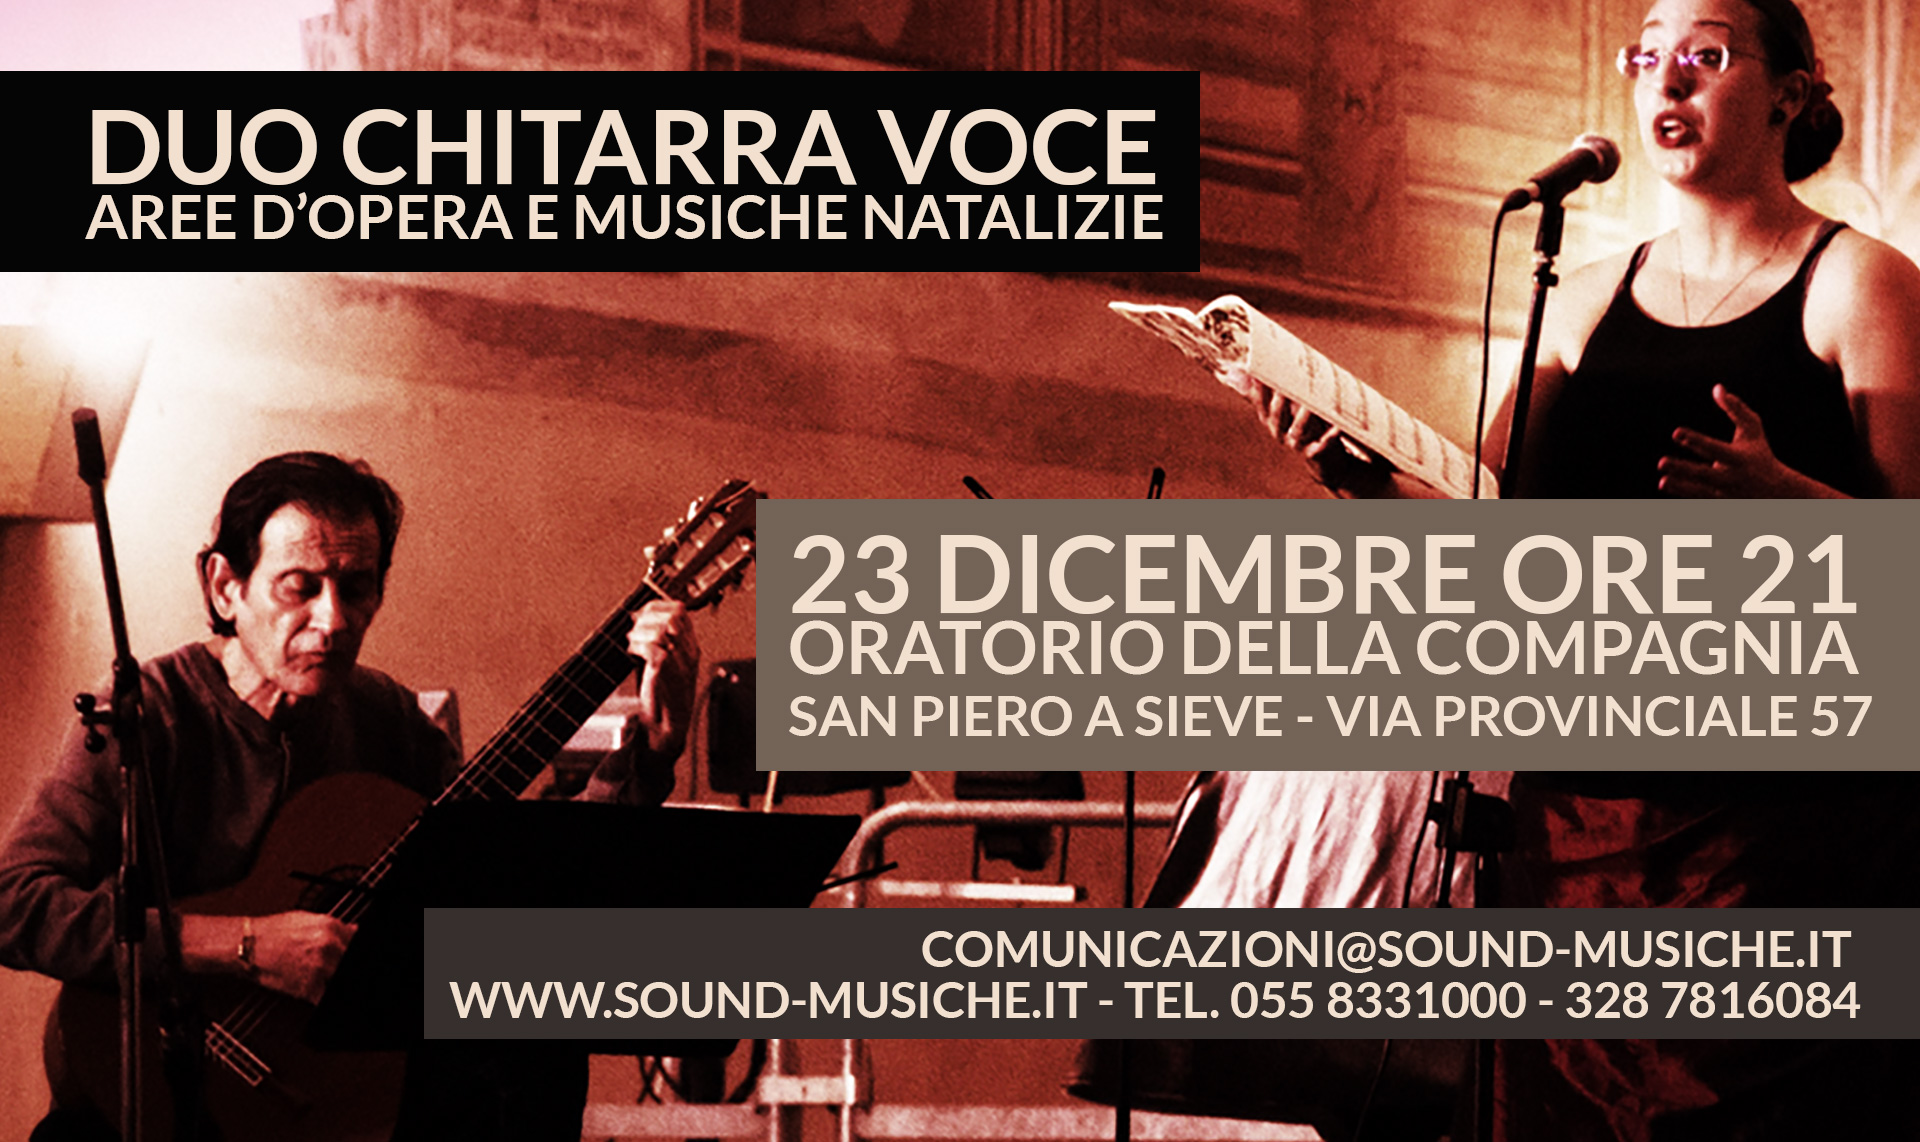 Duo Chitarra Voce in concerto Oratorio della Compagnia San Piero a Sieve 23 Dicembre ore 21